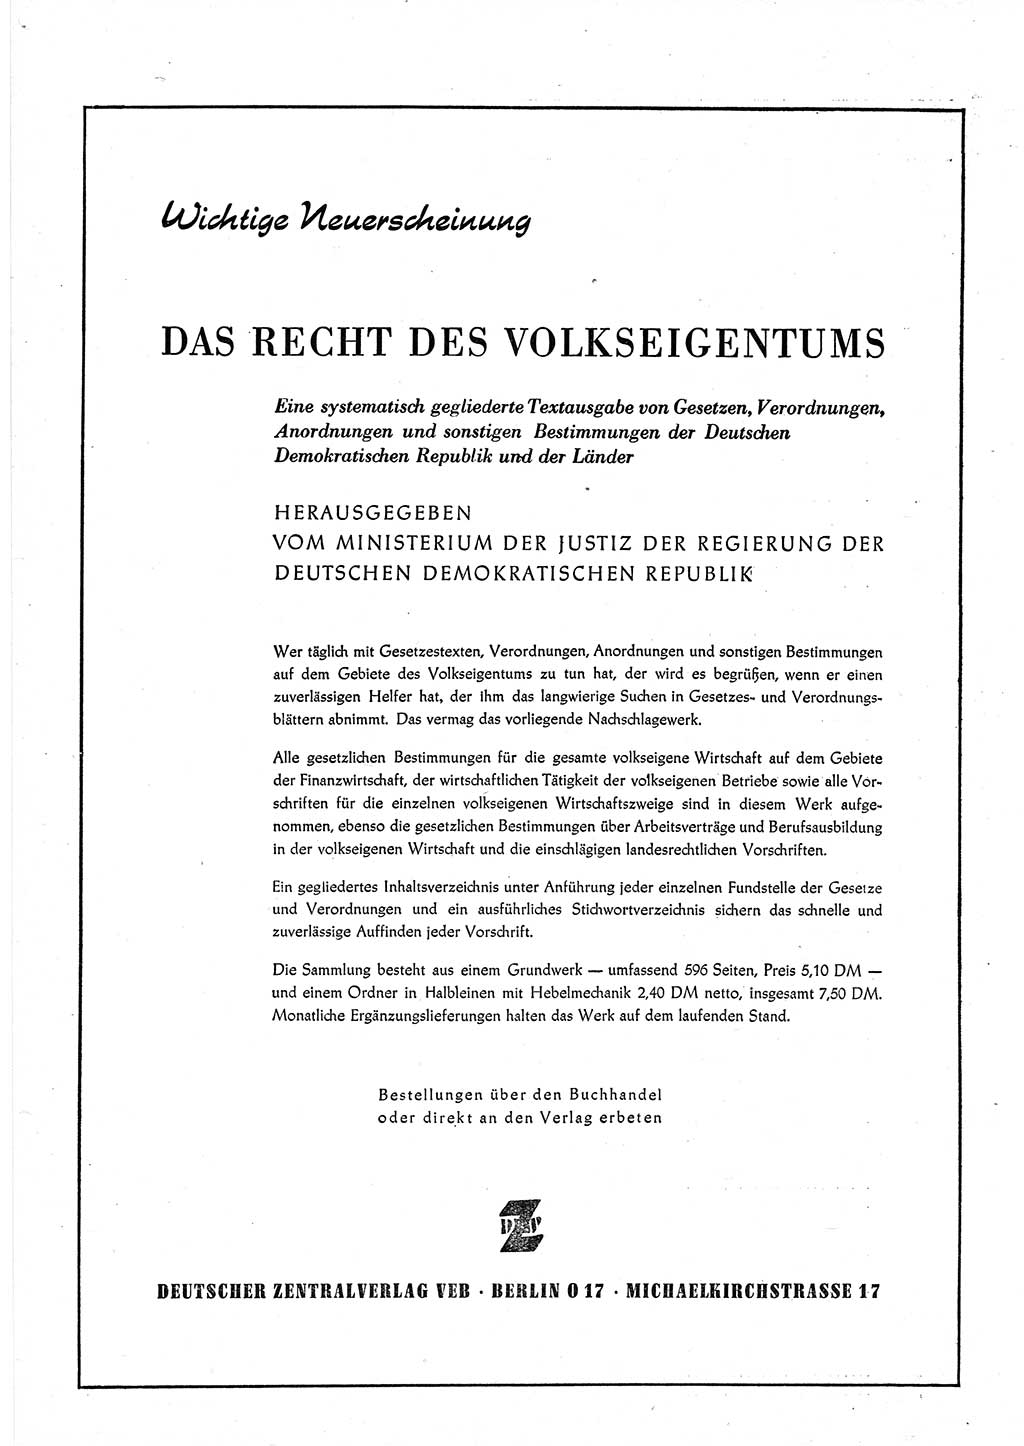 Gesetzblatt (GBl.) der Deutschen Demokratischen Republik (DDR) 1952, Seite 650 (GBl. DDR 1952, S. 650)